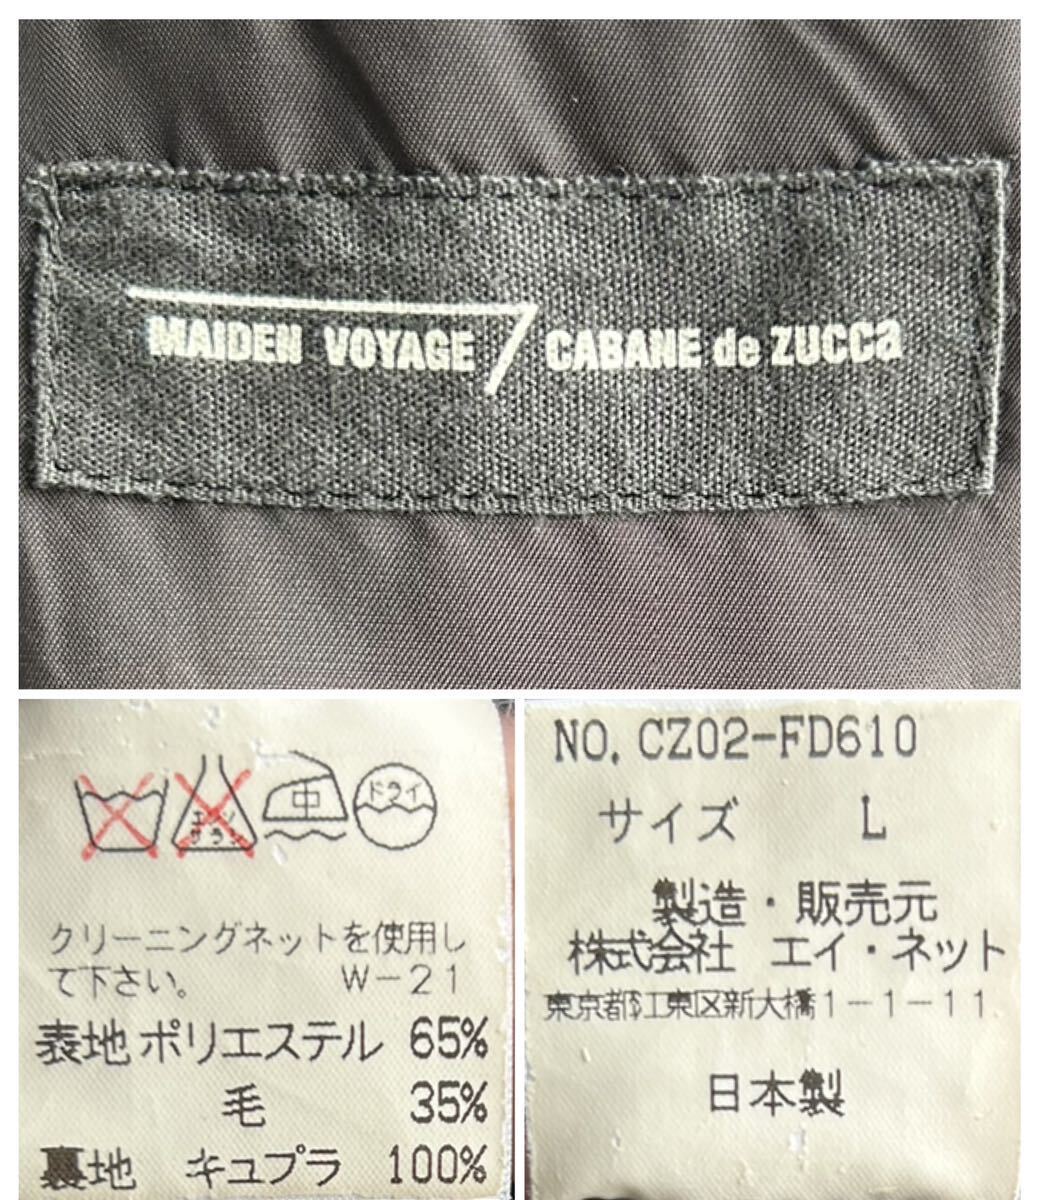 【極美品】CABANE de ZUCCA テーラード ジャケット メンズ L 紺 ネイビー 段返り3B 日本製 MAIDEN VOYAGE カバン ド ズッカ_画像5